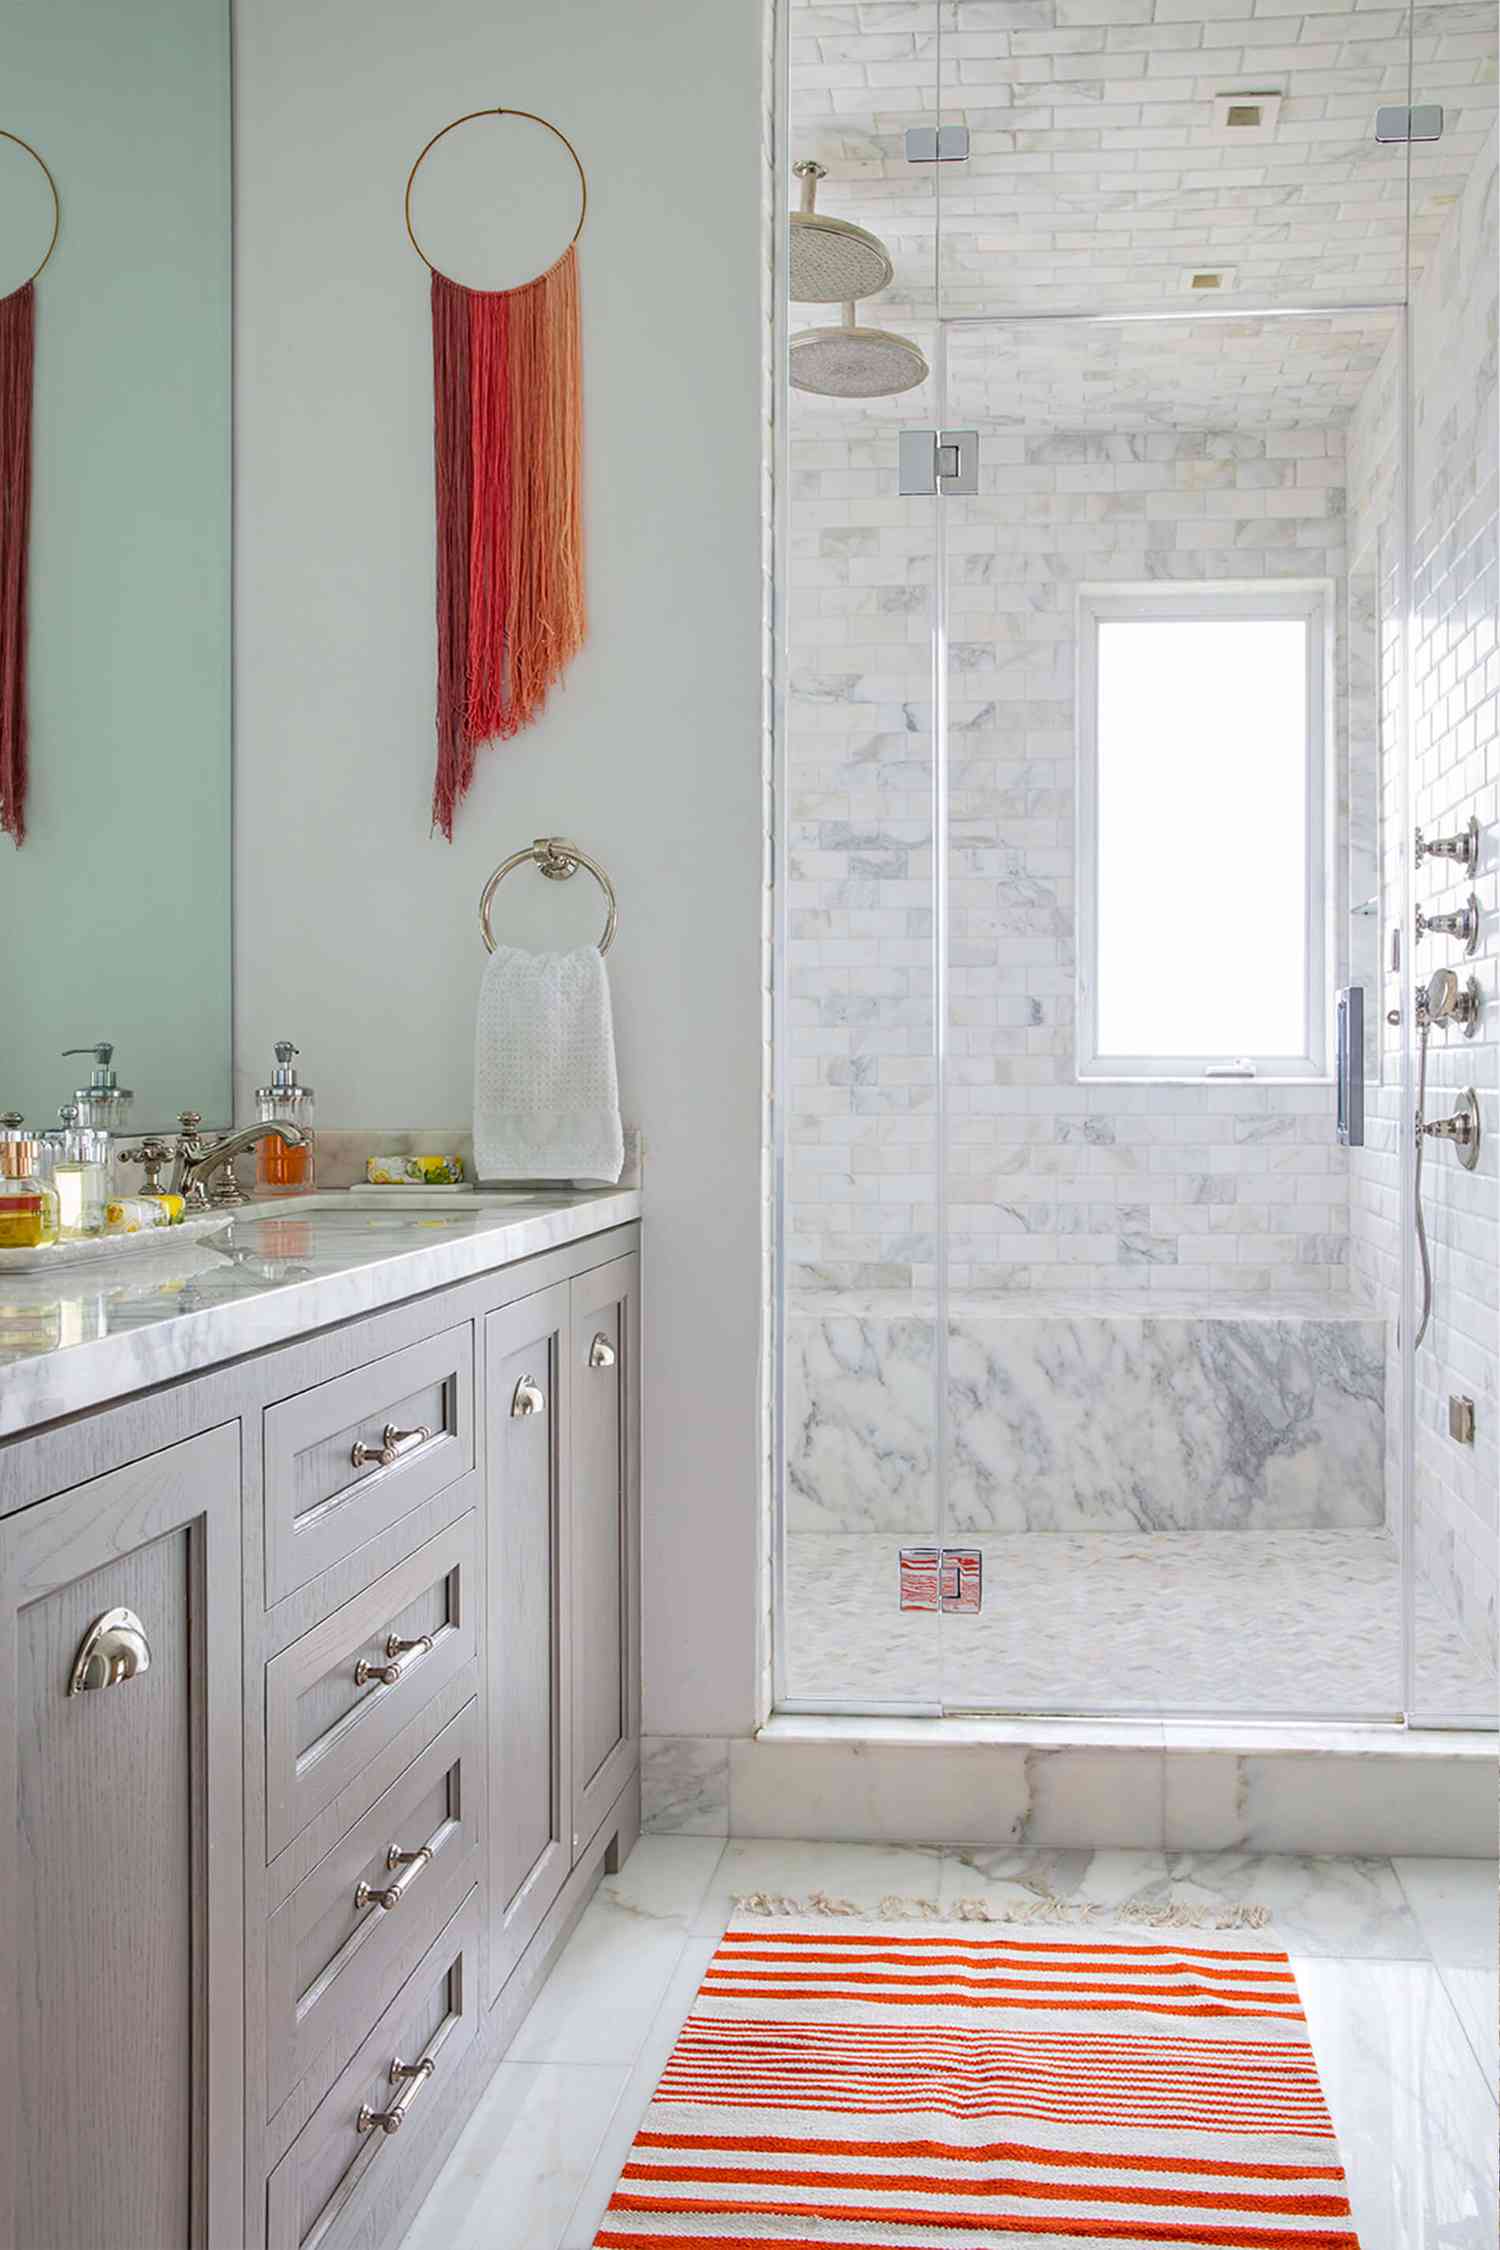 Une salle de bain neutre avec des fils d'art colorés suspendus.